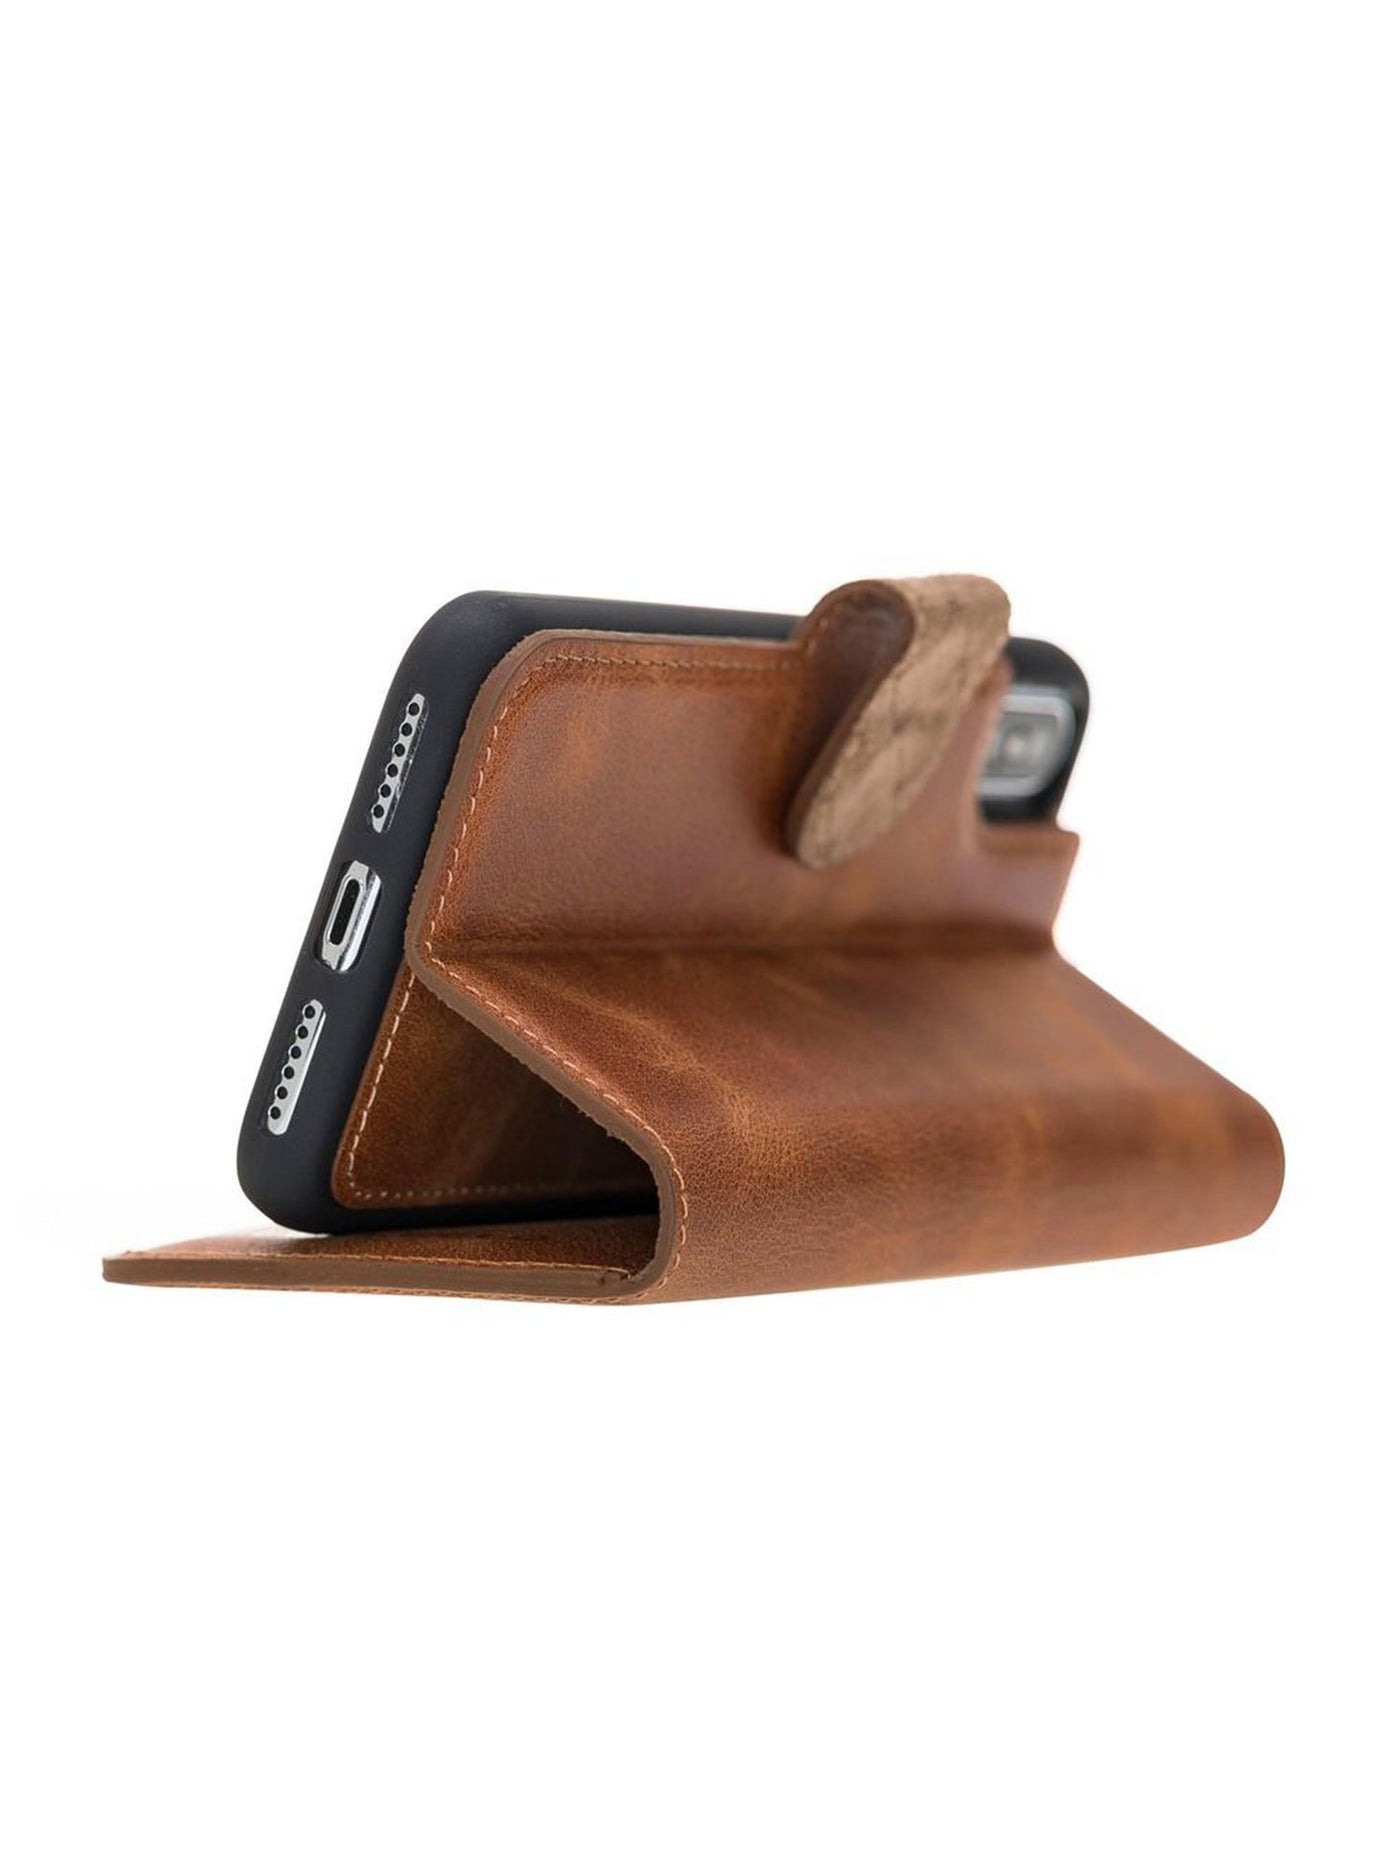 Plånboksfodral med avtagbart magnetskal i äkta läder för Apple iPhone X/XS/10 från Bouletta Alpina- Guld-brun #color_guld-brun